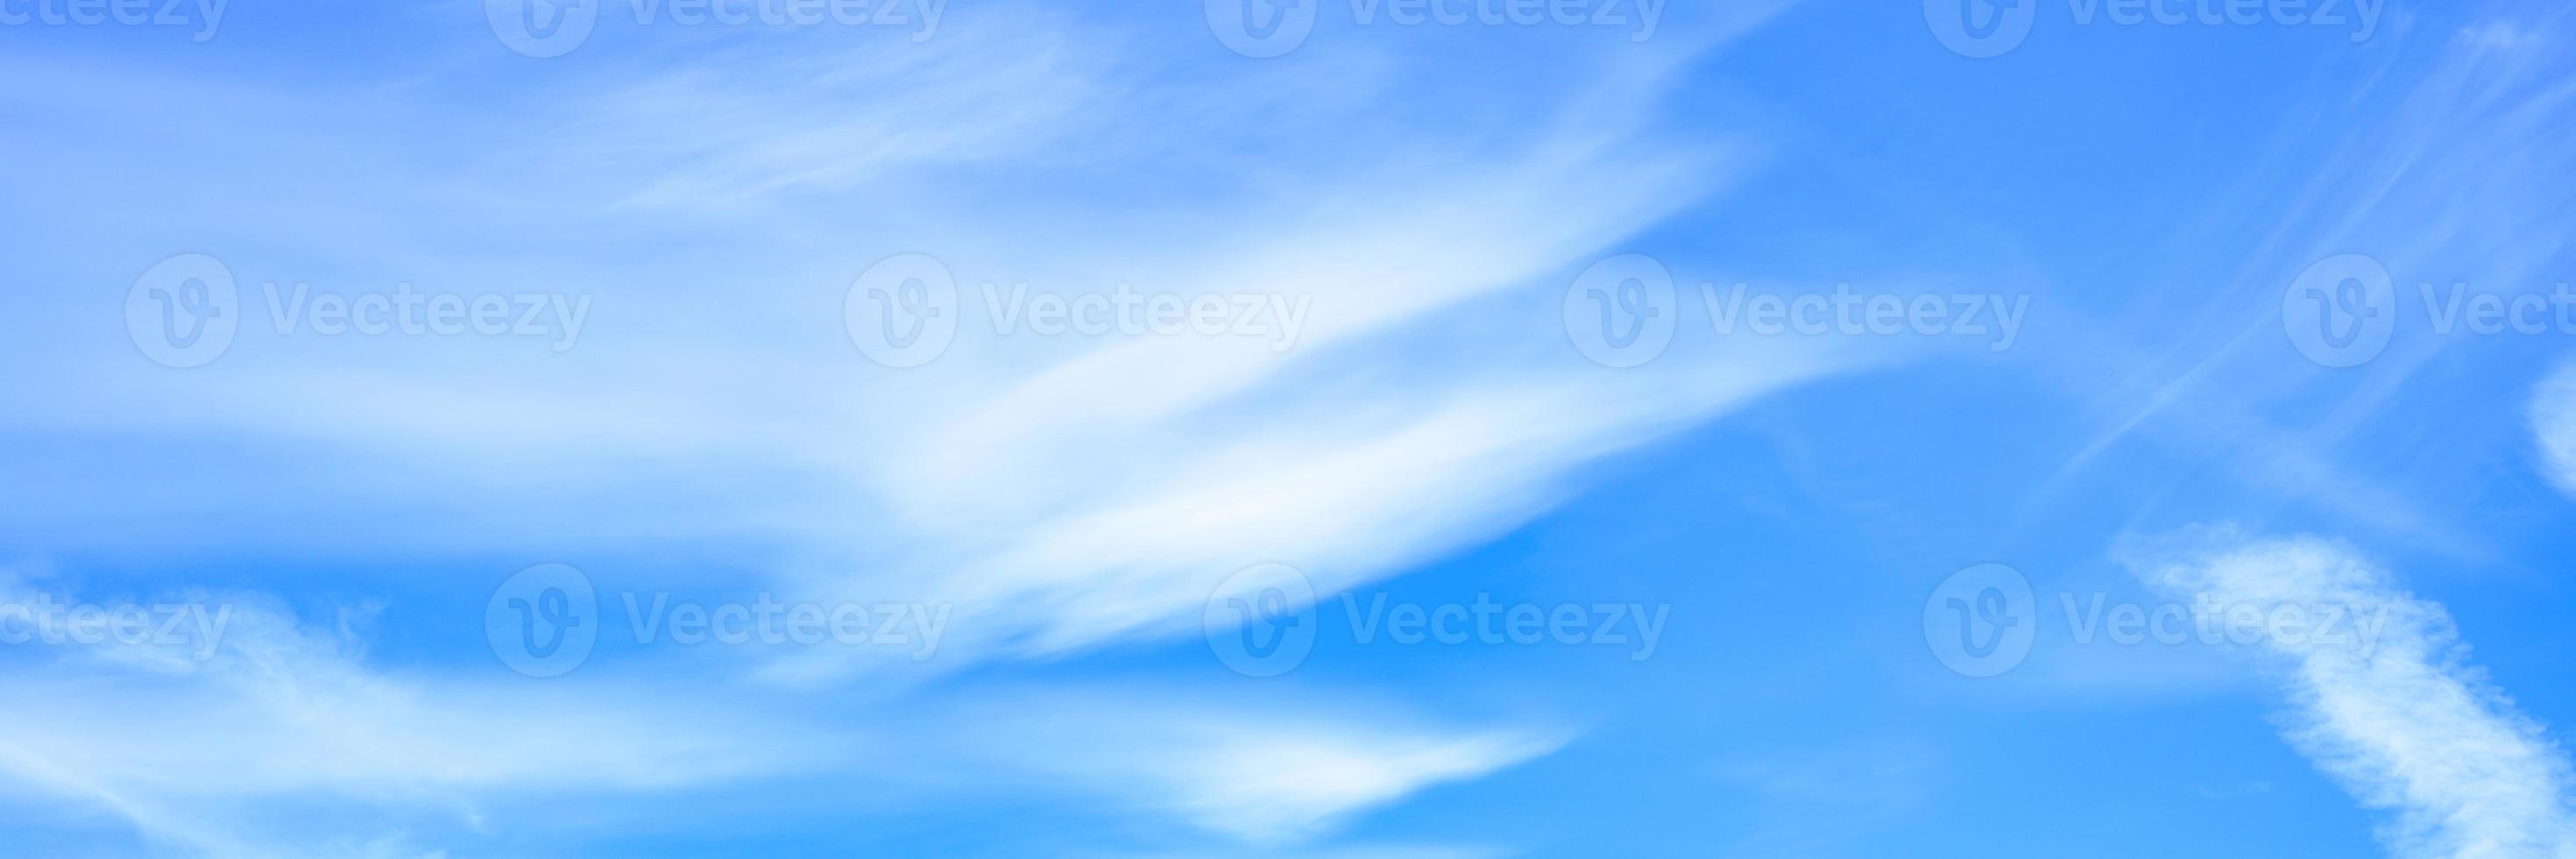 belle nuvole di cielo blu foto